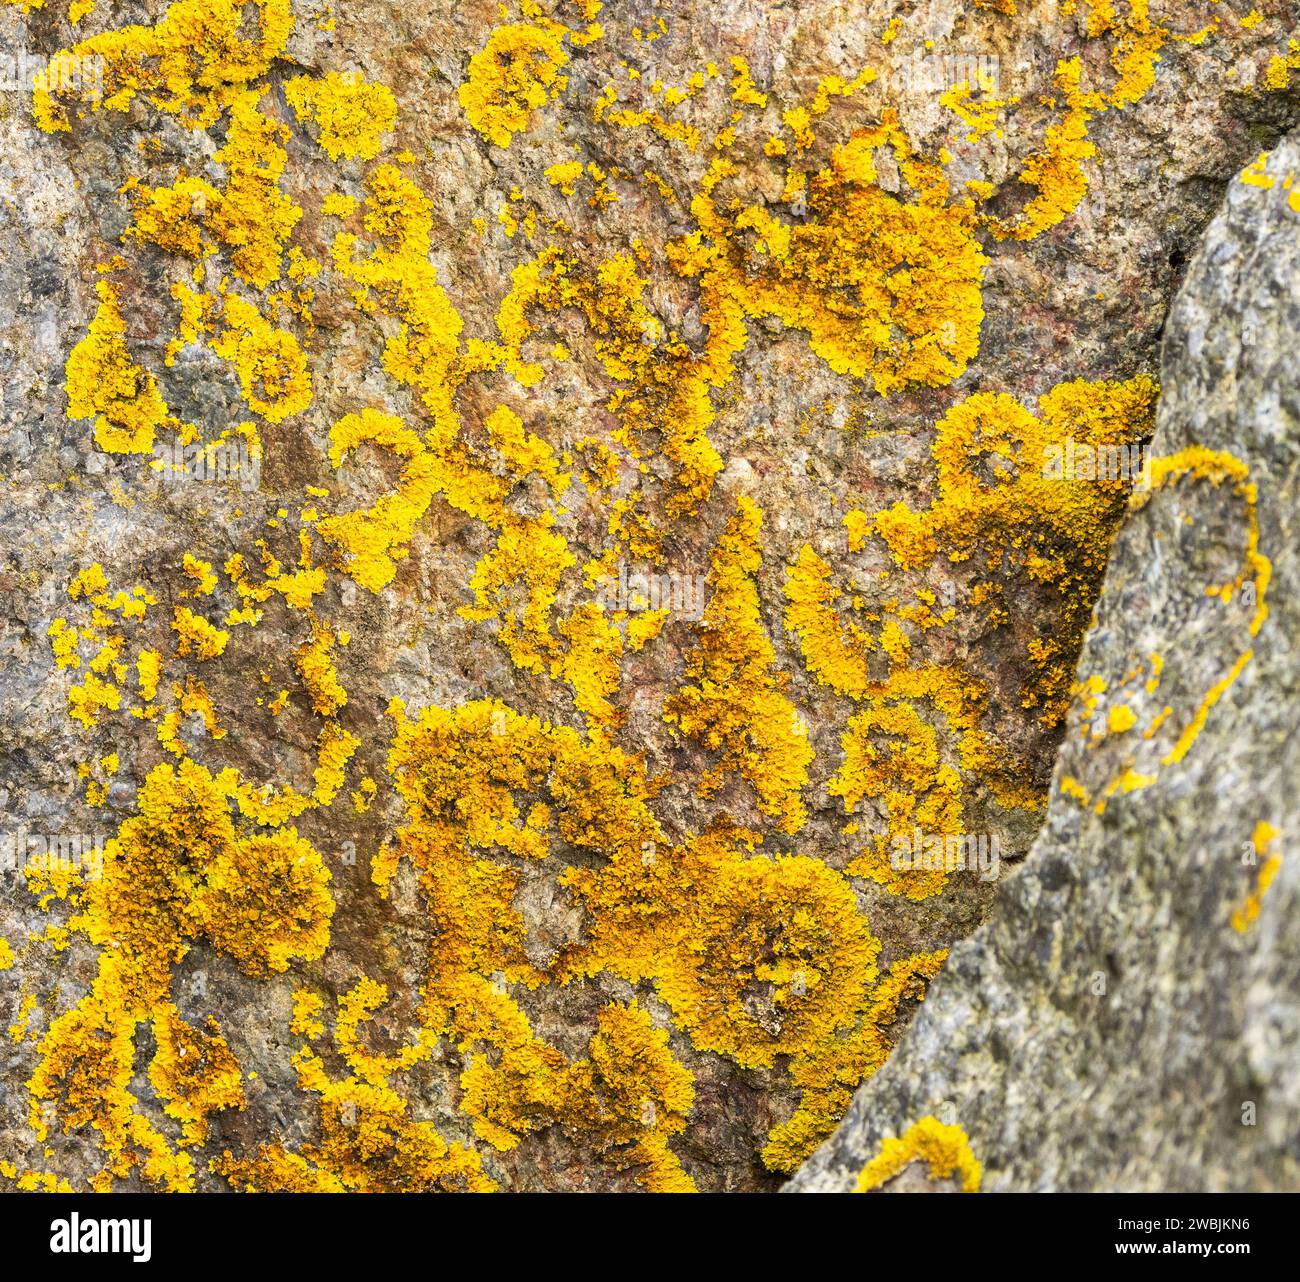 Golden Crust è un lichene colorato e difficilmente variegato che prospera in condizioni estreme. Comuni lungo le coste, sono resistenti al sale. Foto Stock